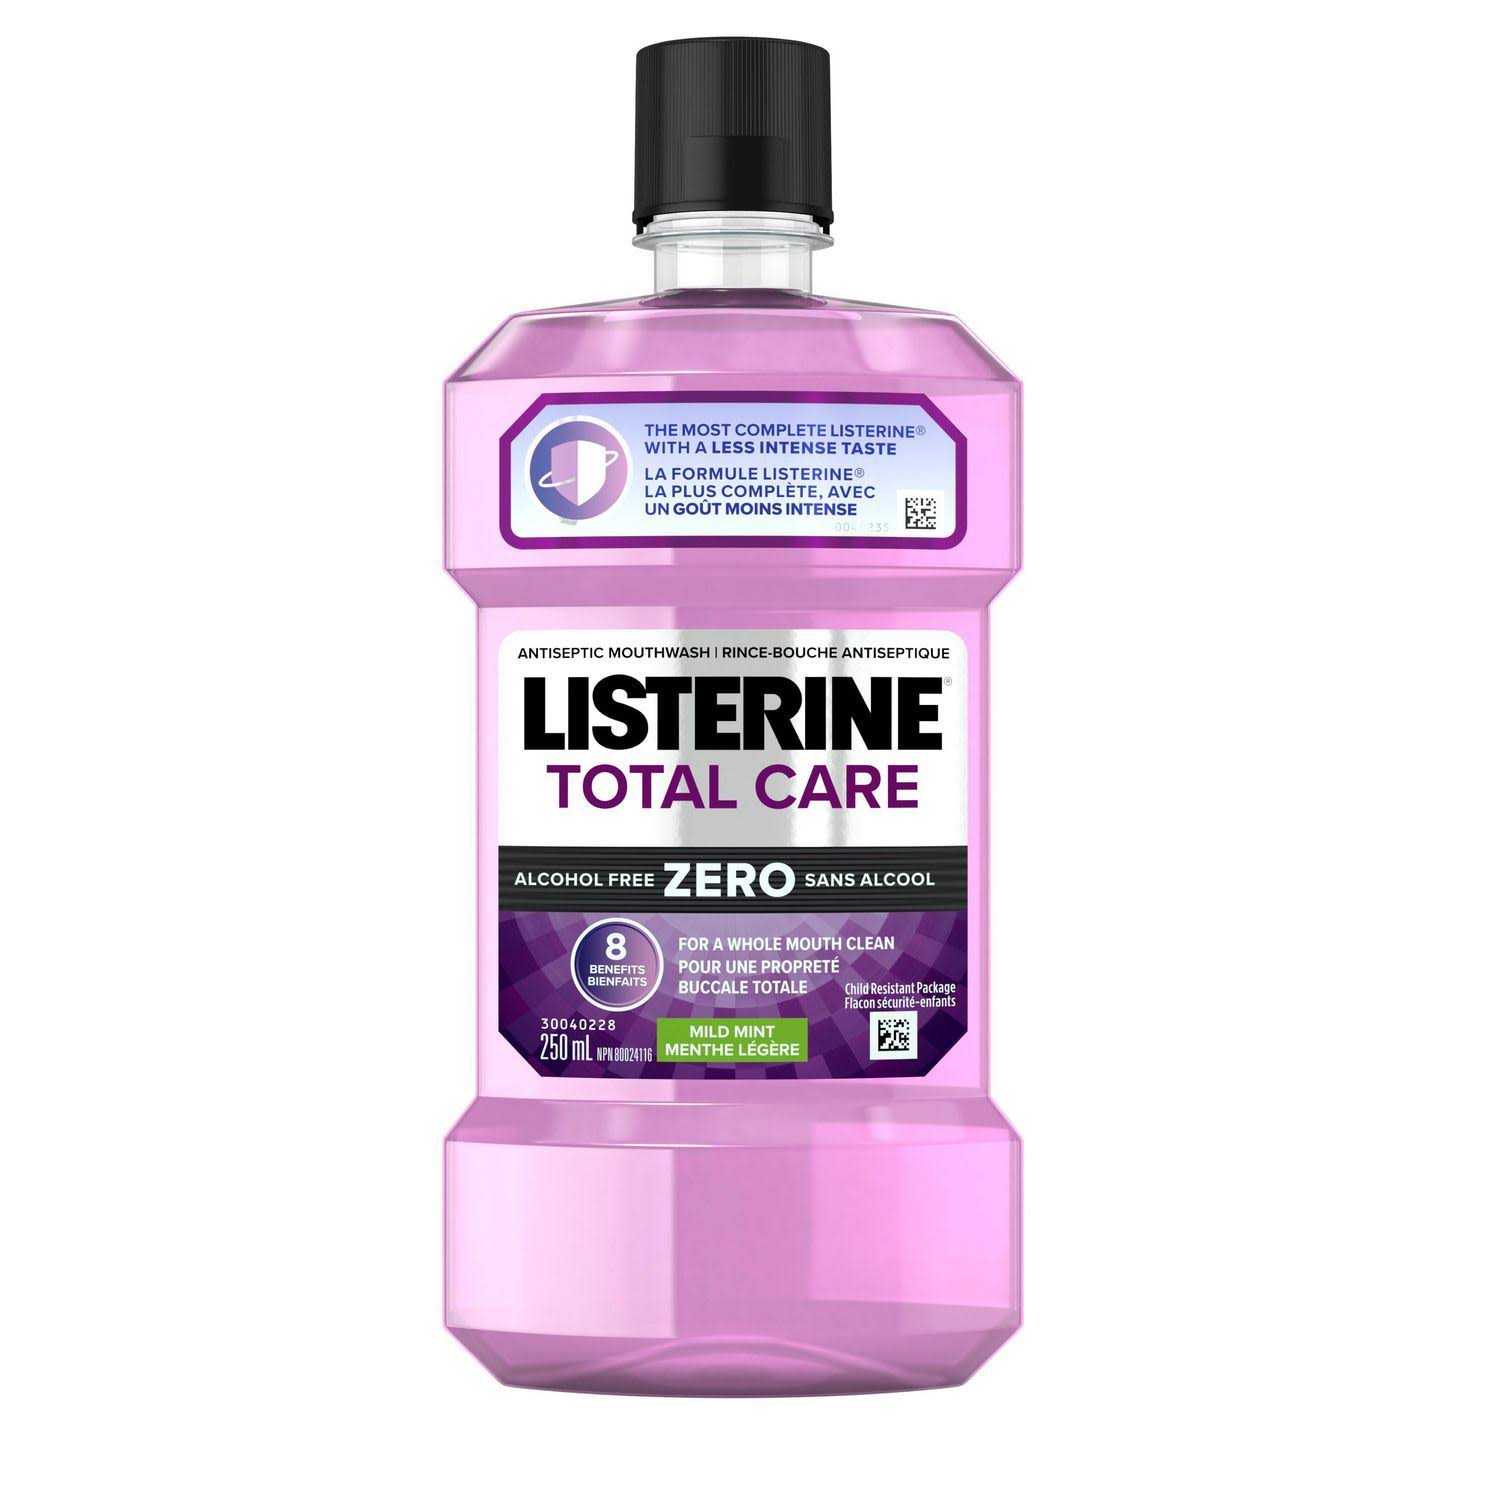 Listerine Total Care Zero Antiseptic Mouthwash - Mild Mint, 1L